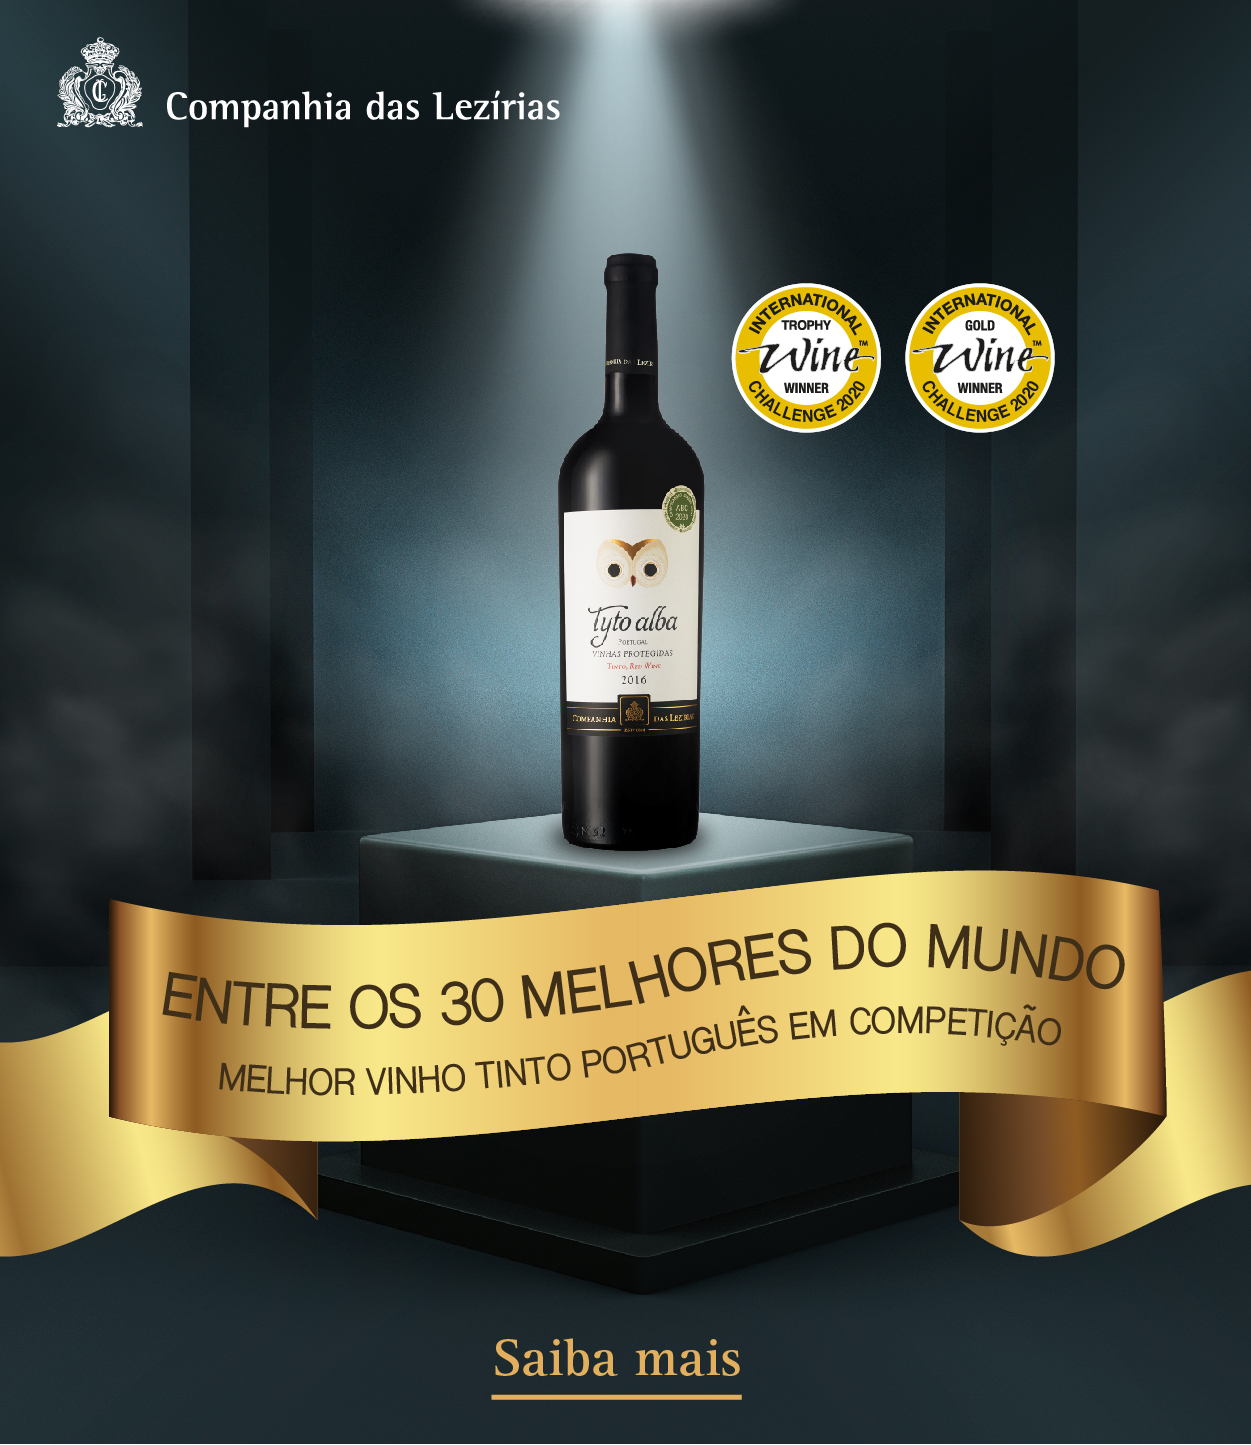 Tyto alba tinto 2016 é o melhor vinho tinto português e um dos 30 melhores do mundo